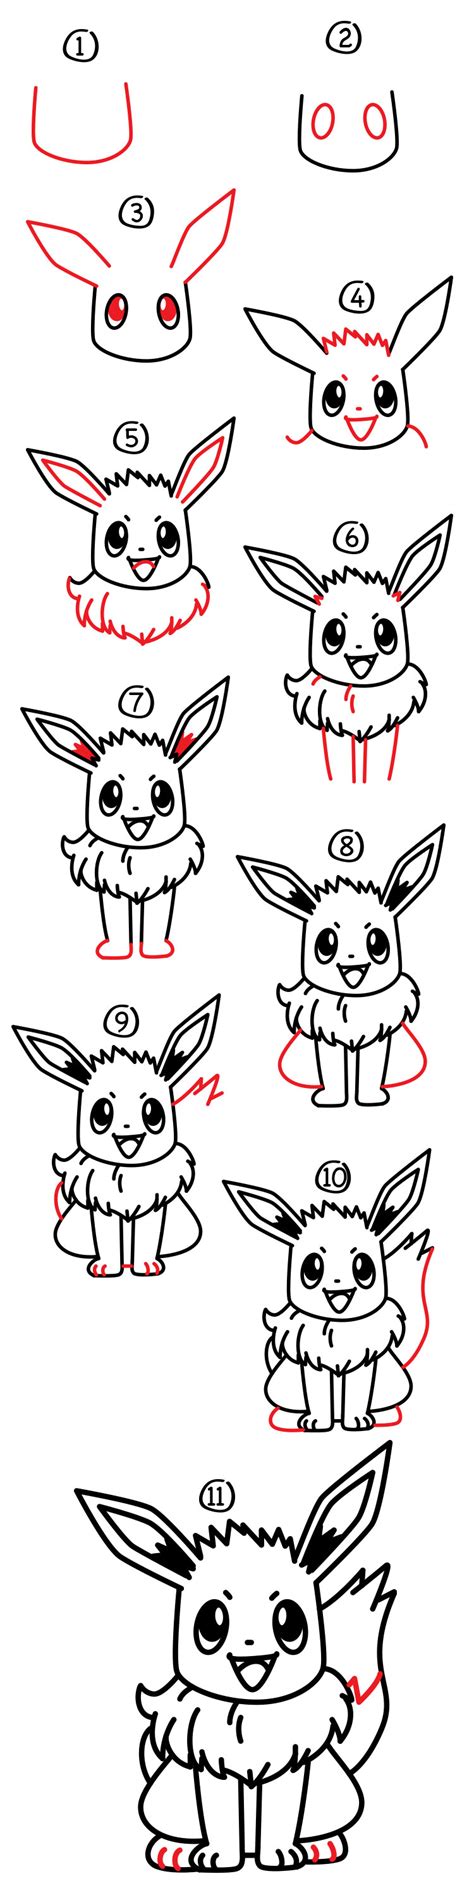 How To Draw Eevee Pokemon Eevee Draw Easy Pokemon Dra